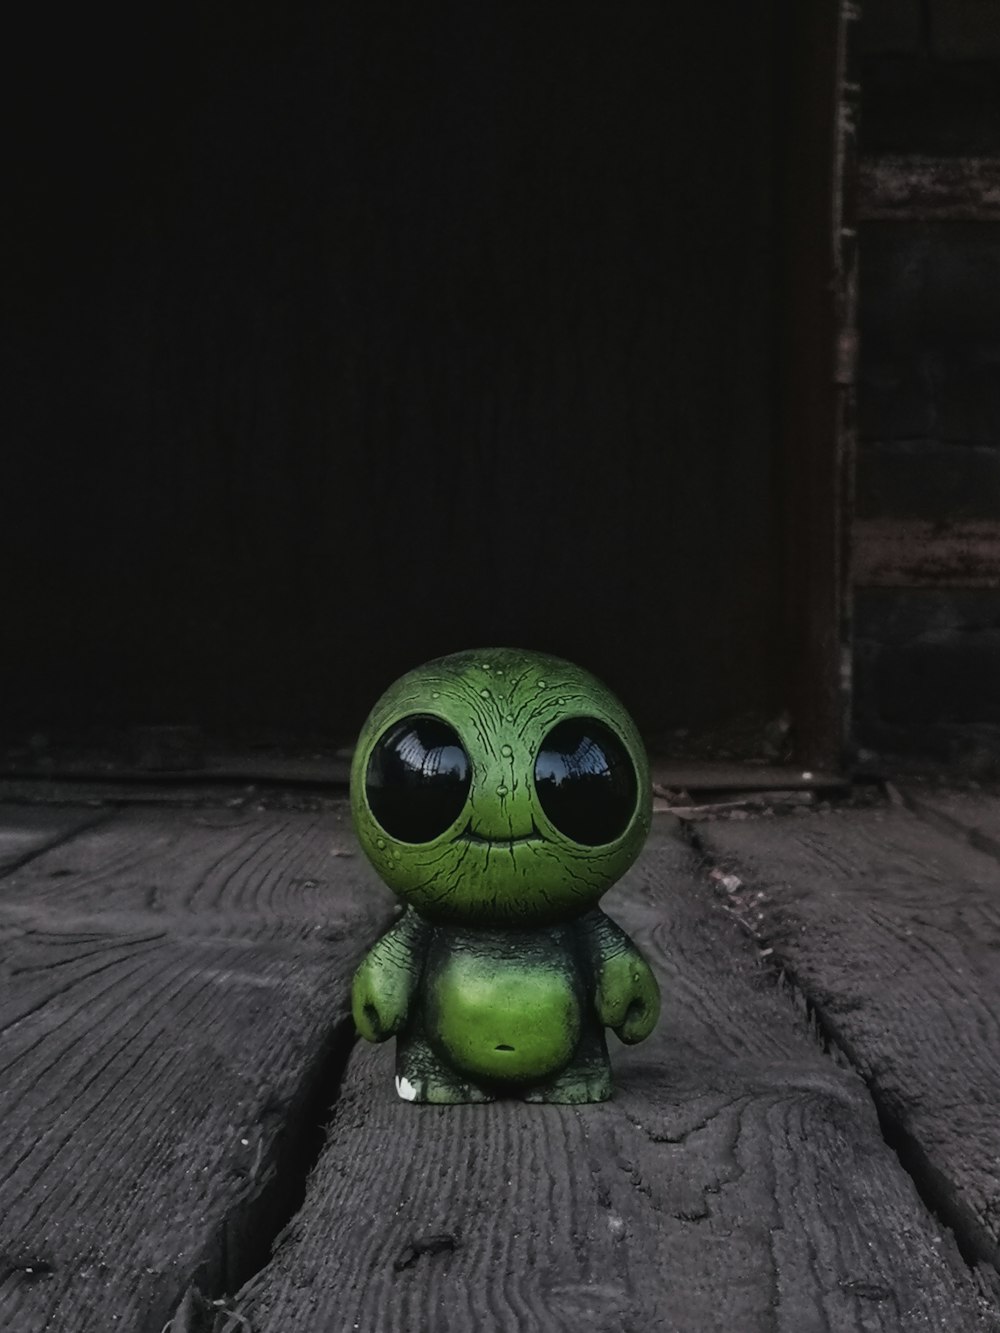 green alien character figurine